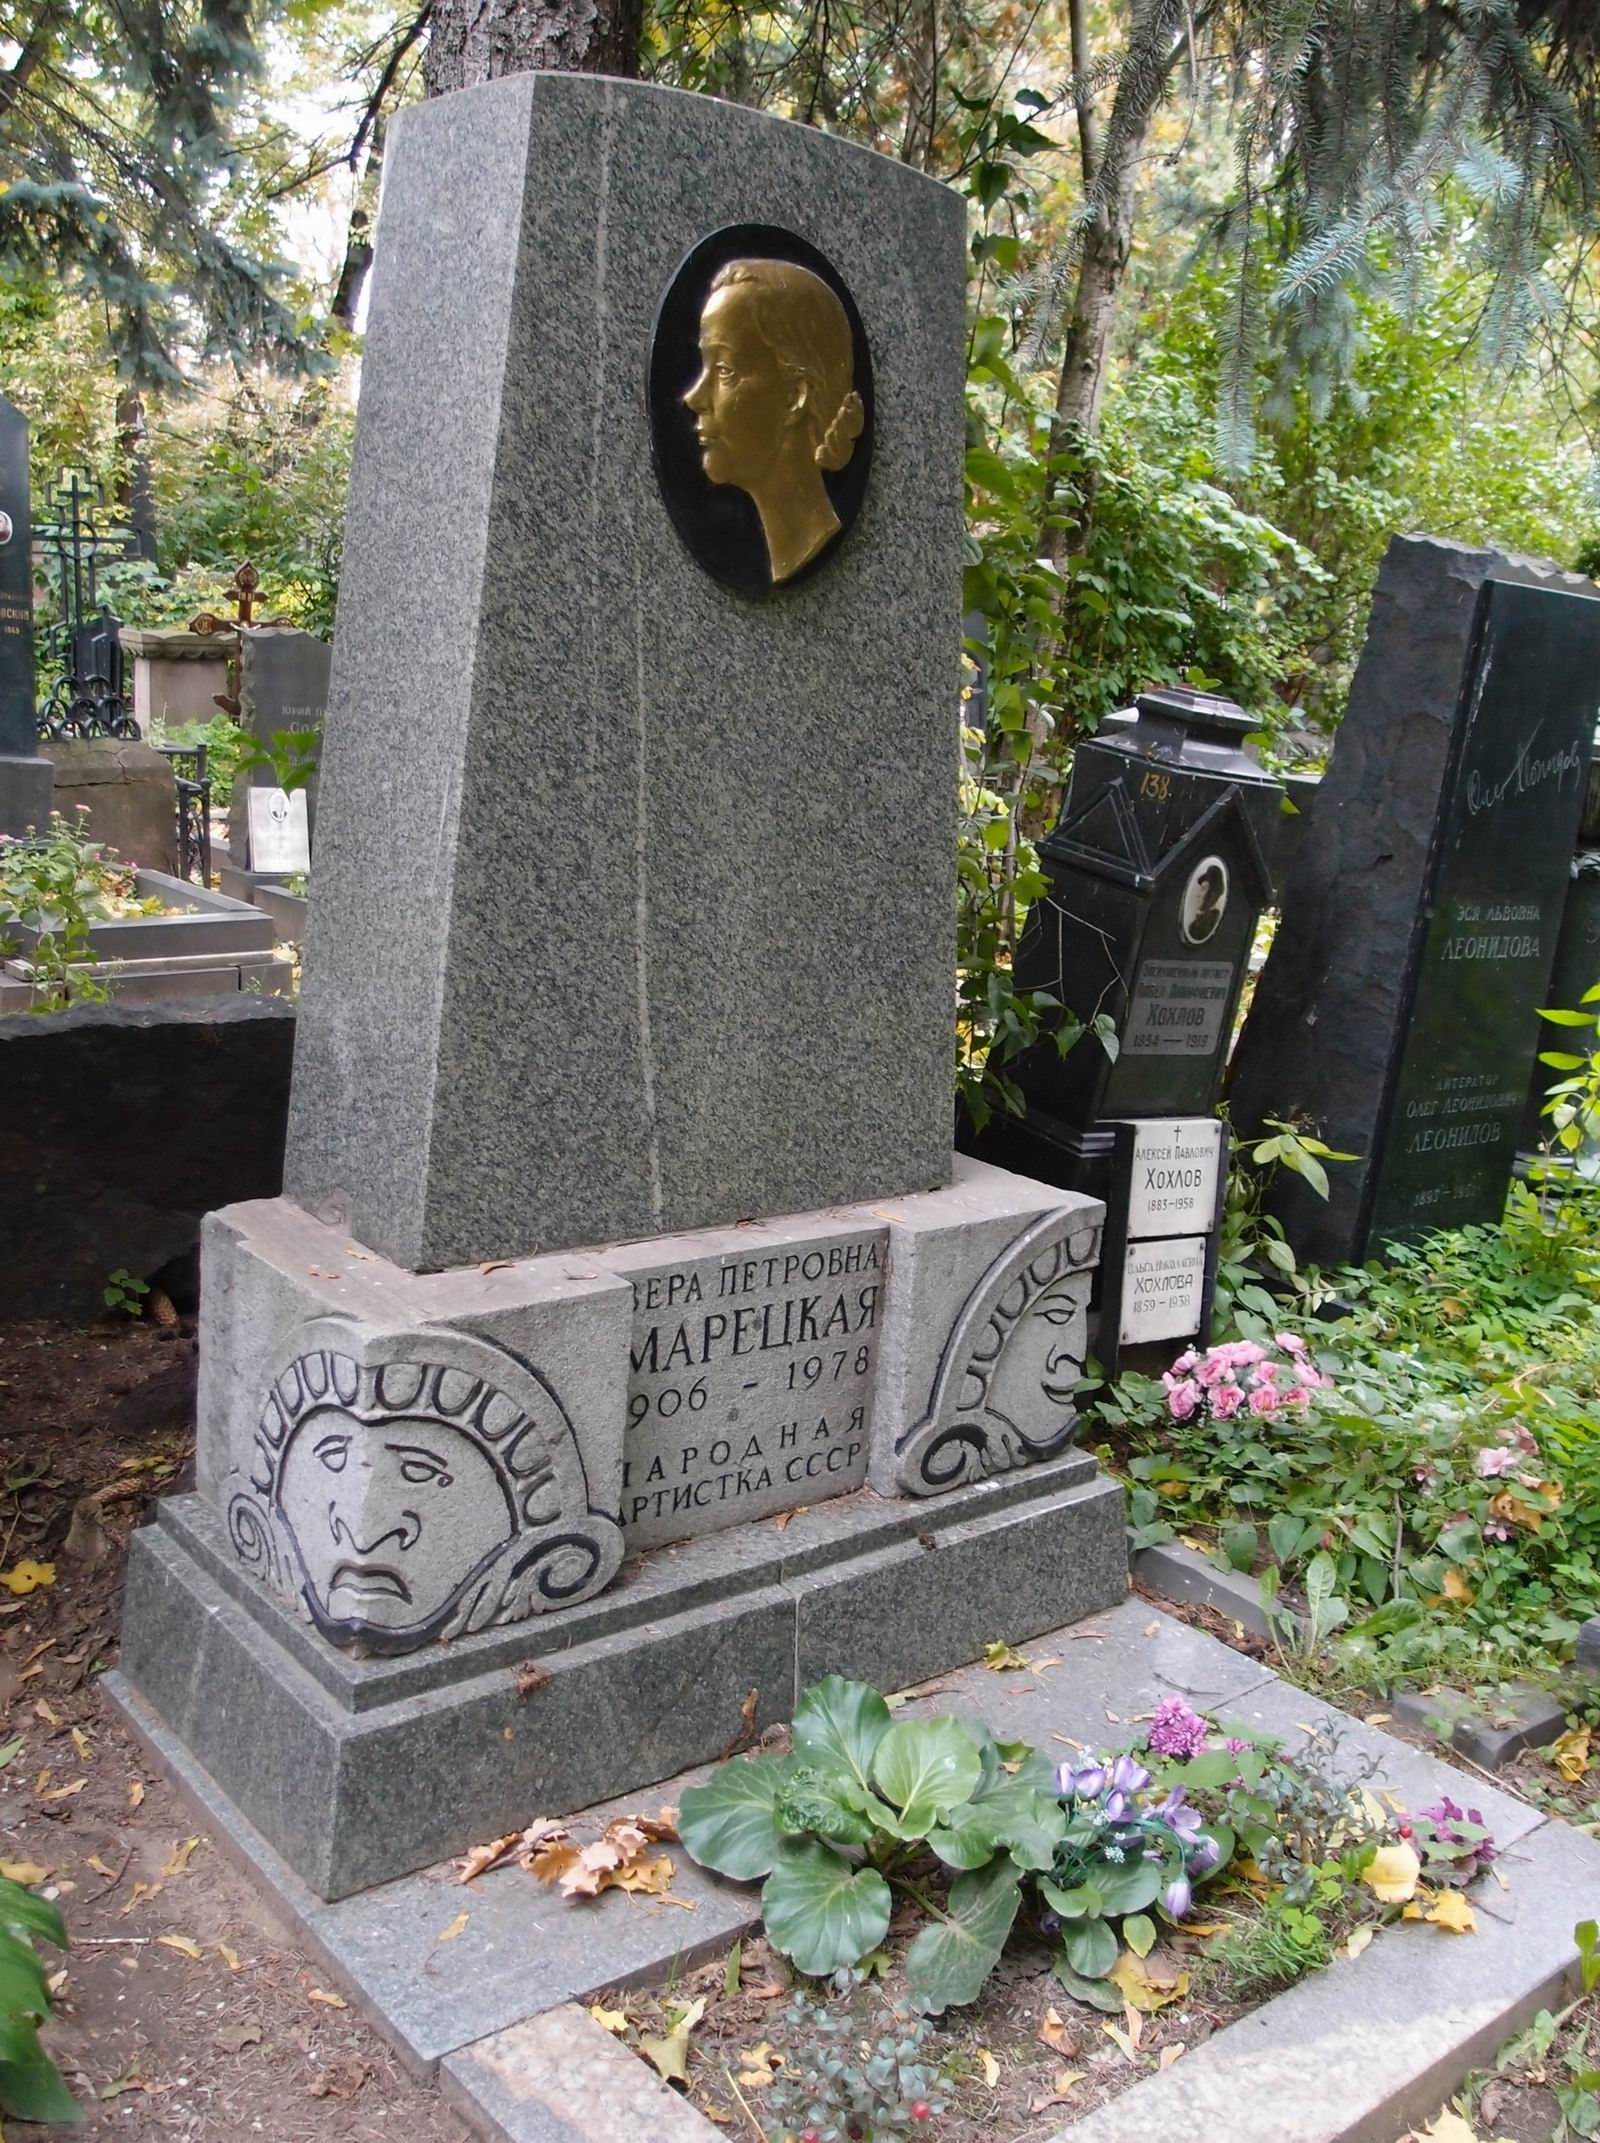 Памятник на могиле Марецкой В.П. (1906-1978), ск. И.Козловский, арх. А.Козловская, В.Либсон, на Новодевичьем кладбище (2-11-11). Нажмите левую кнопку мыши, чтобы увидеть предыдущий вариант.